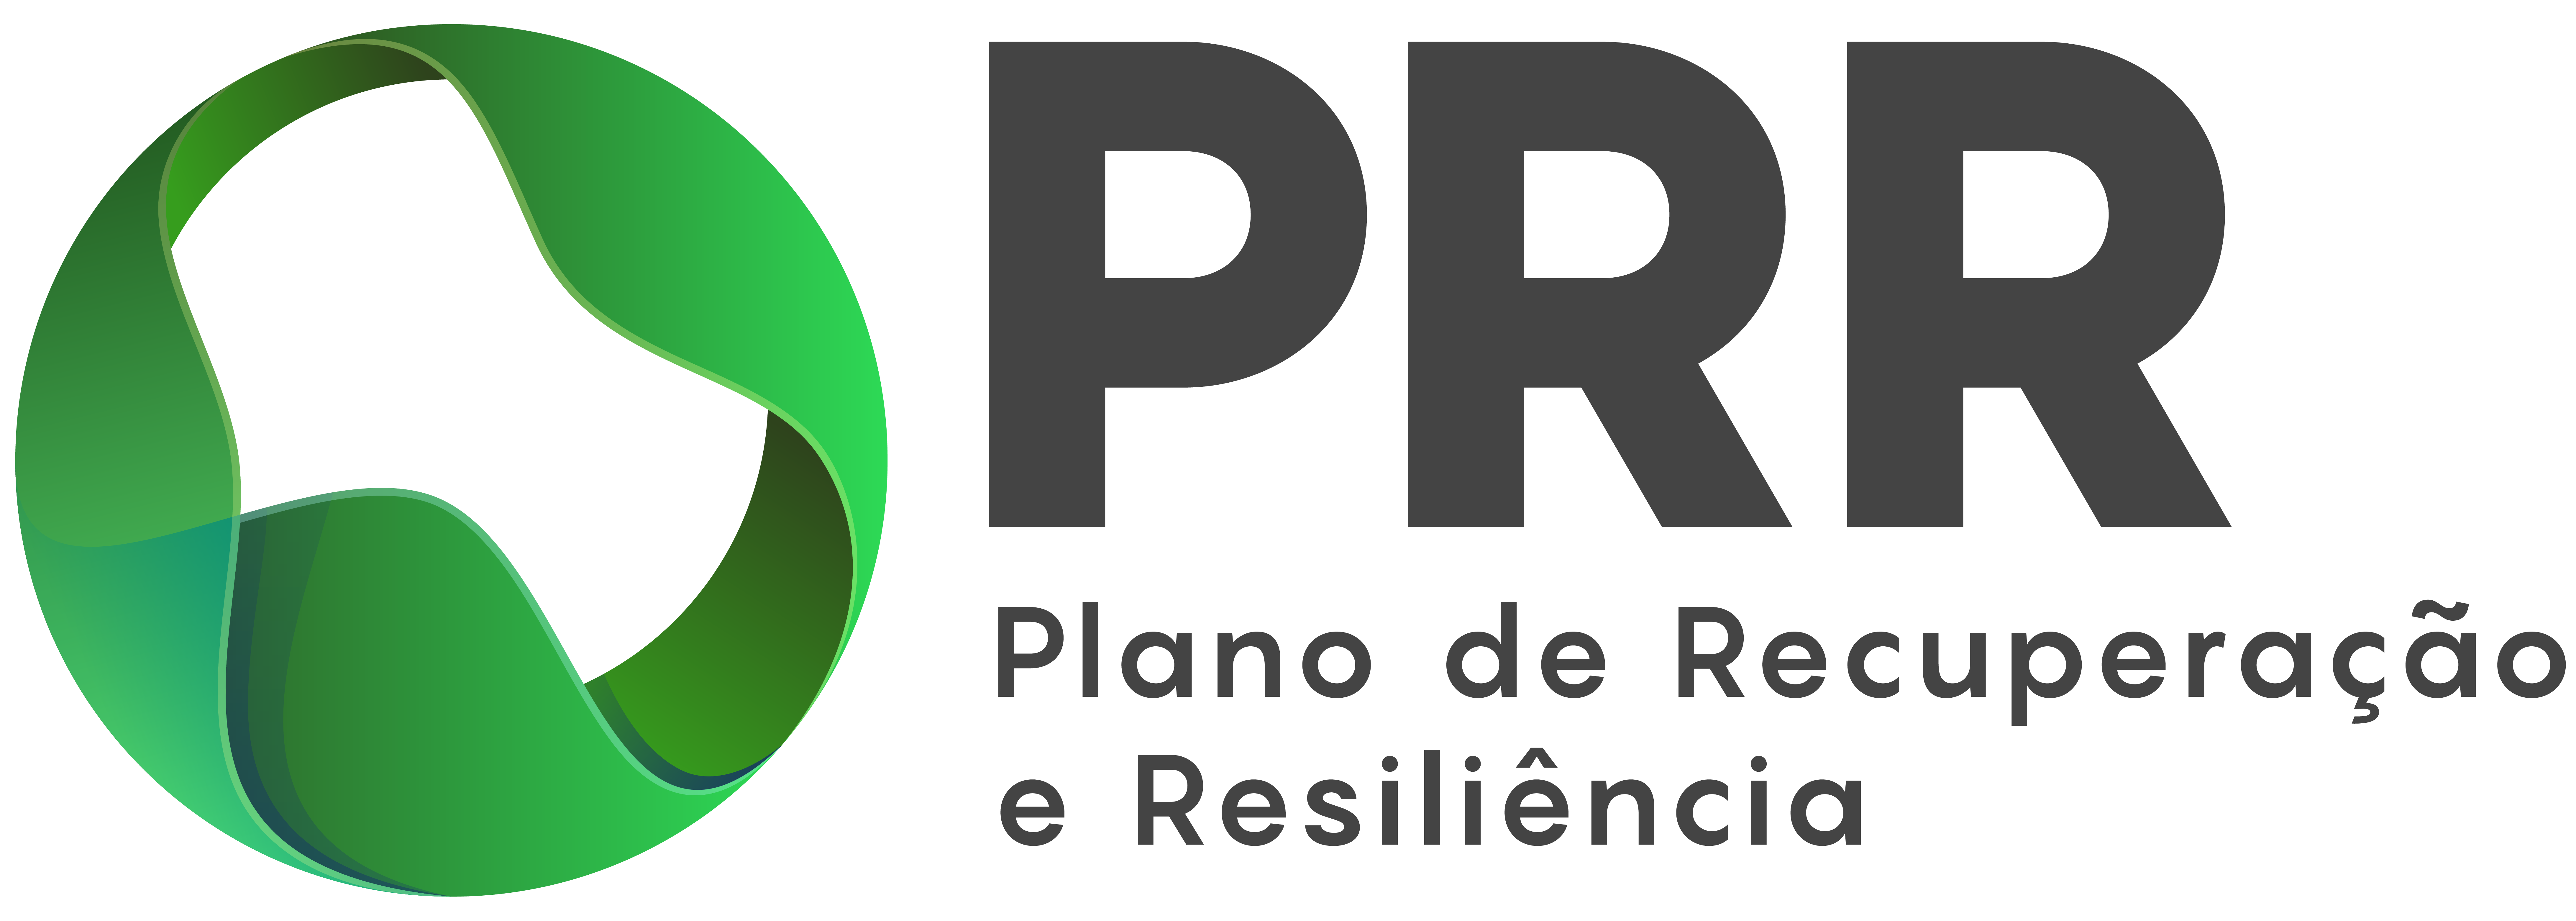 PRR_Logotipos-black_hor